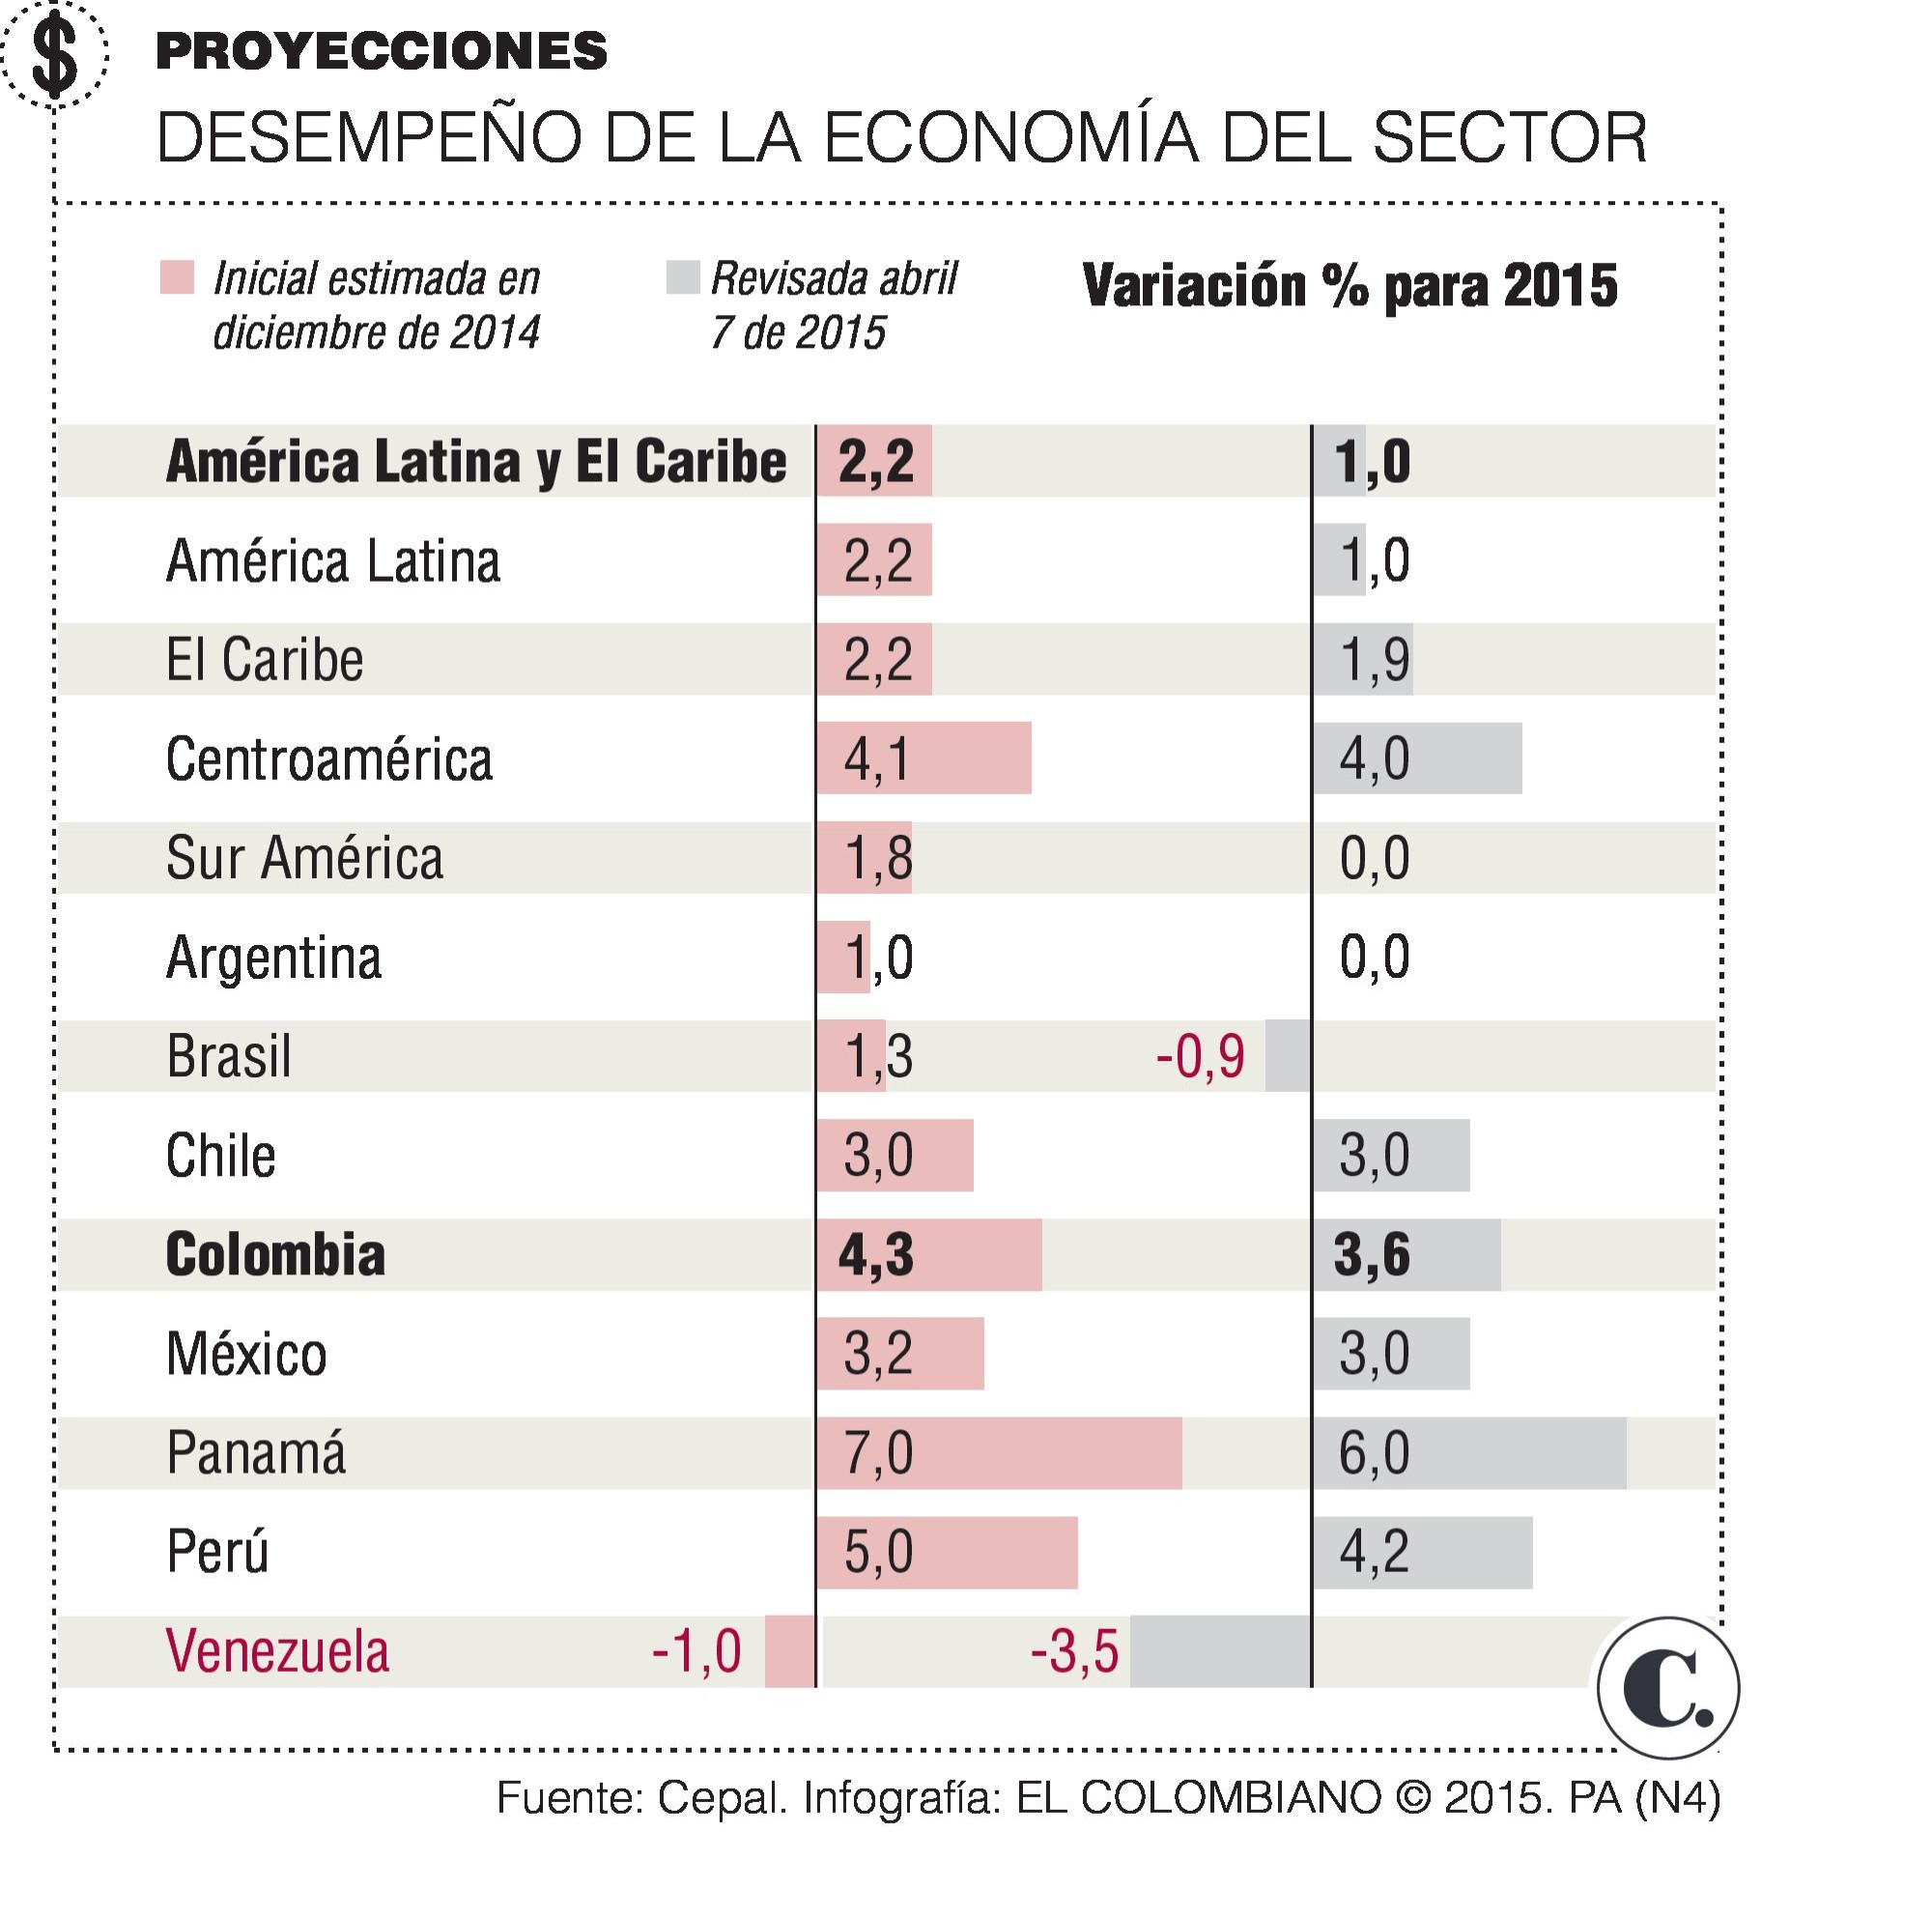 Economía suramericana se frenará este año: Cepal